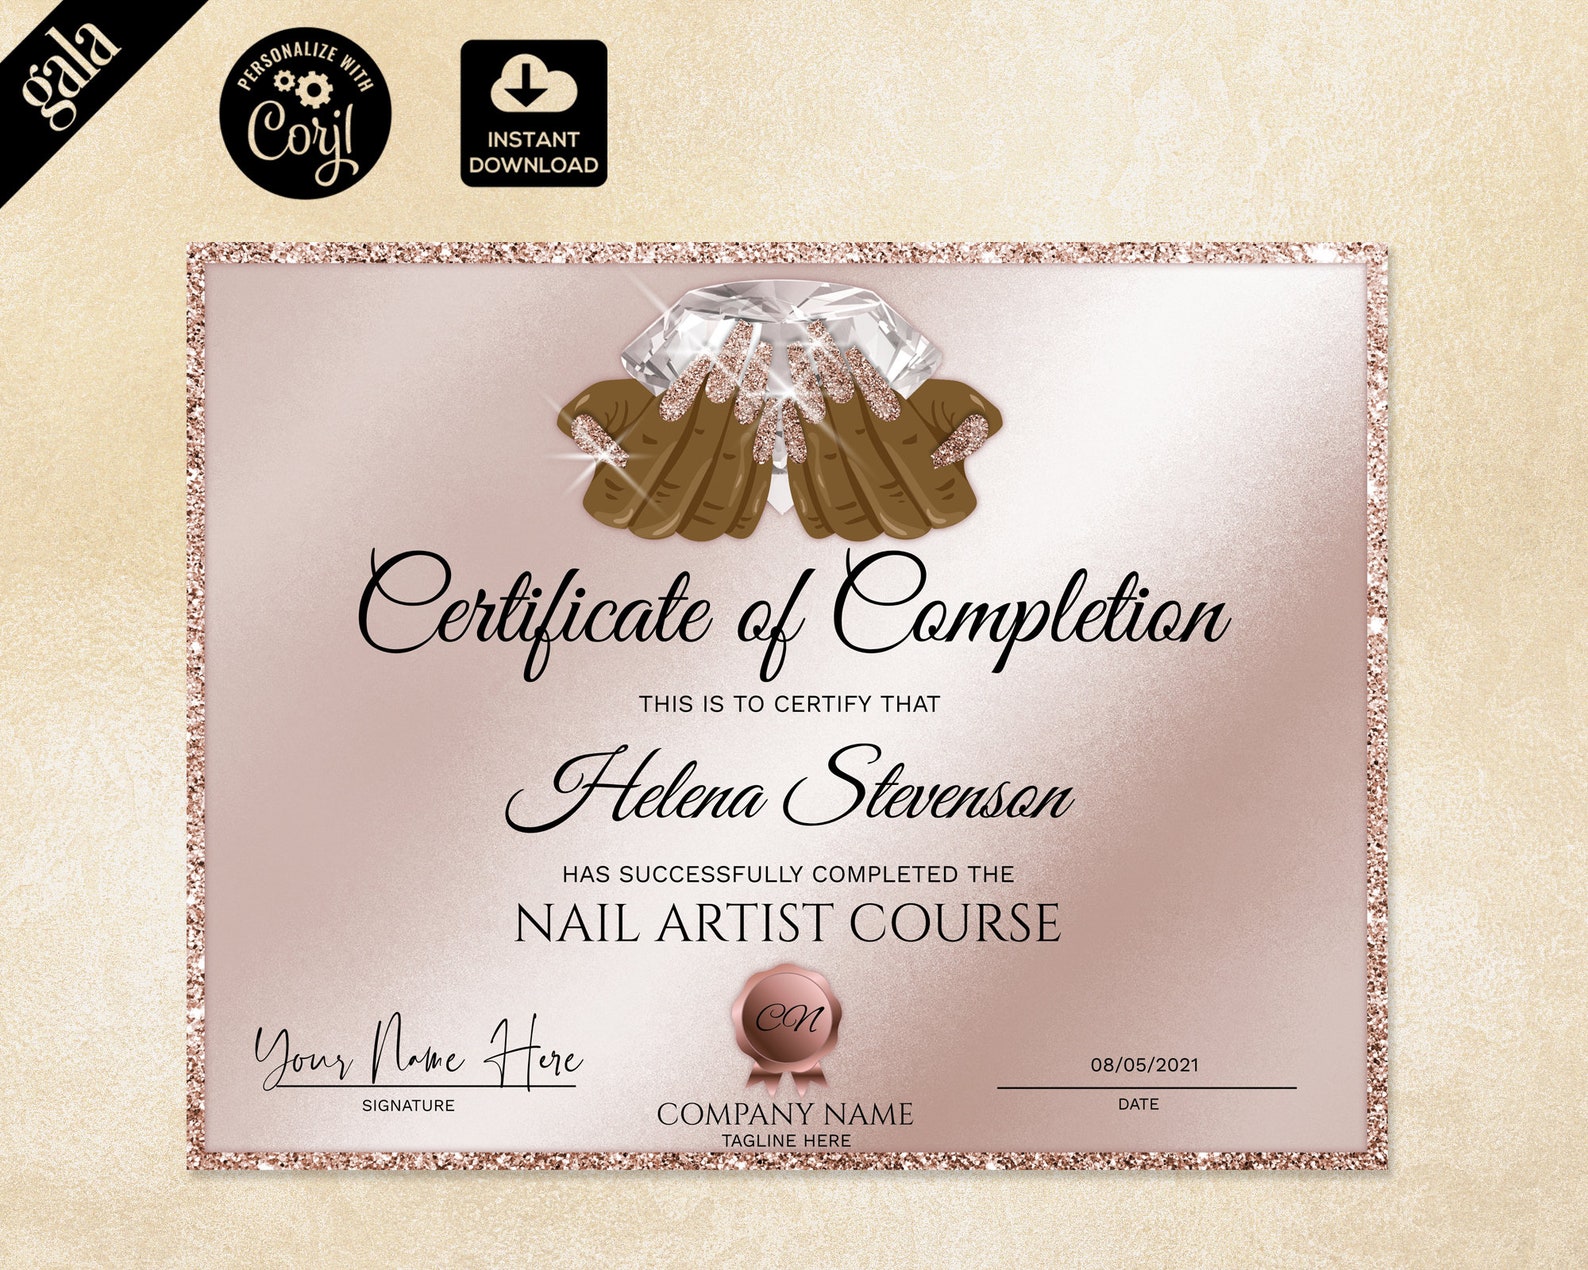 1. Singapore Spa Institute - Nail Art Certificate - wide 1